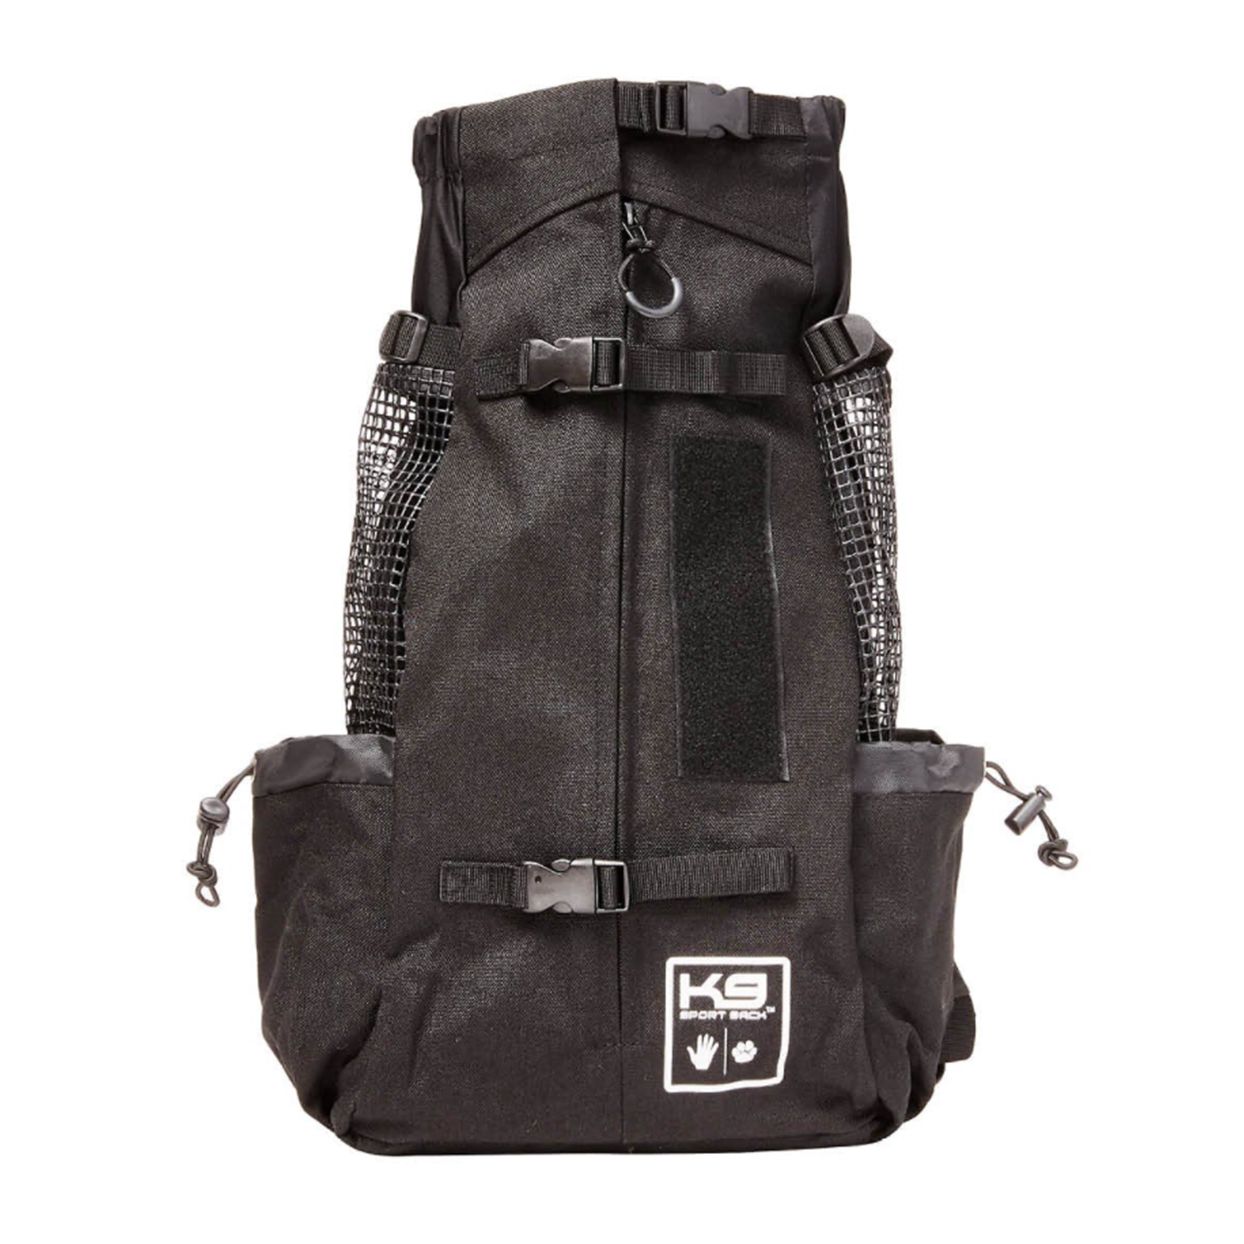 K9 Black sport sack forward facing backpack